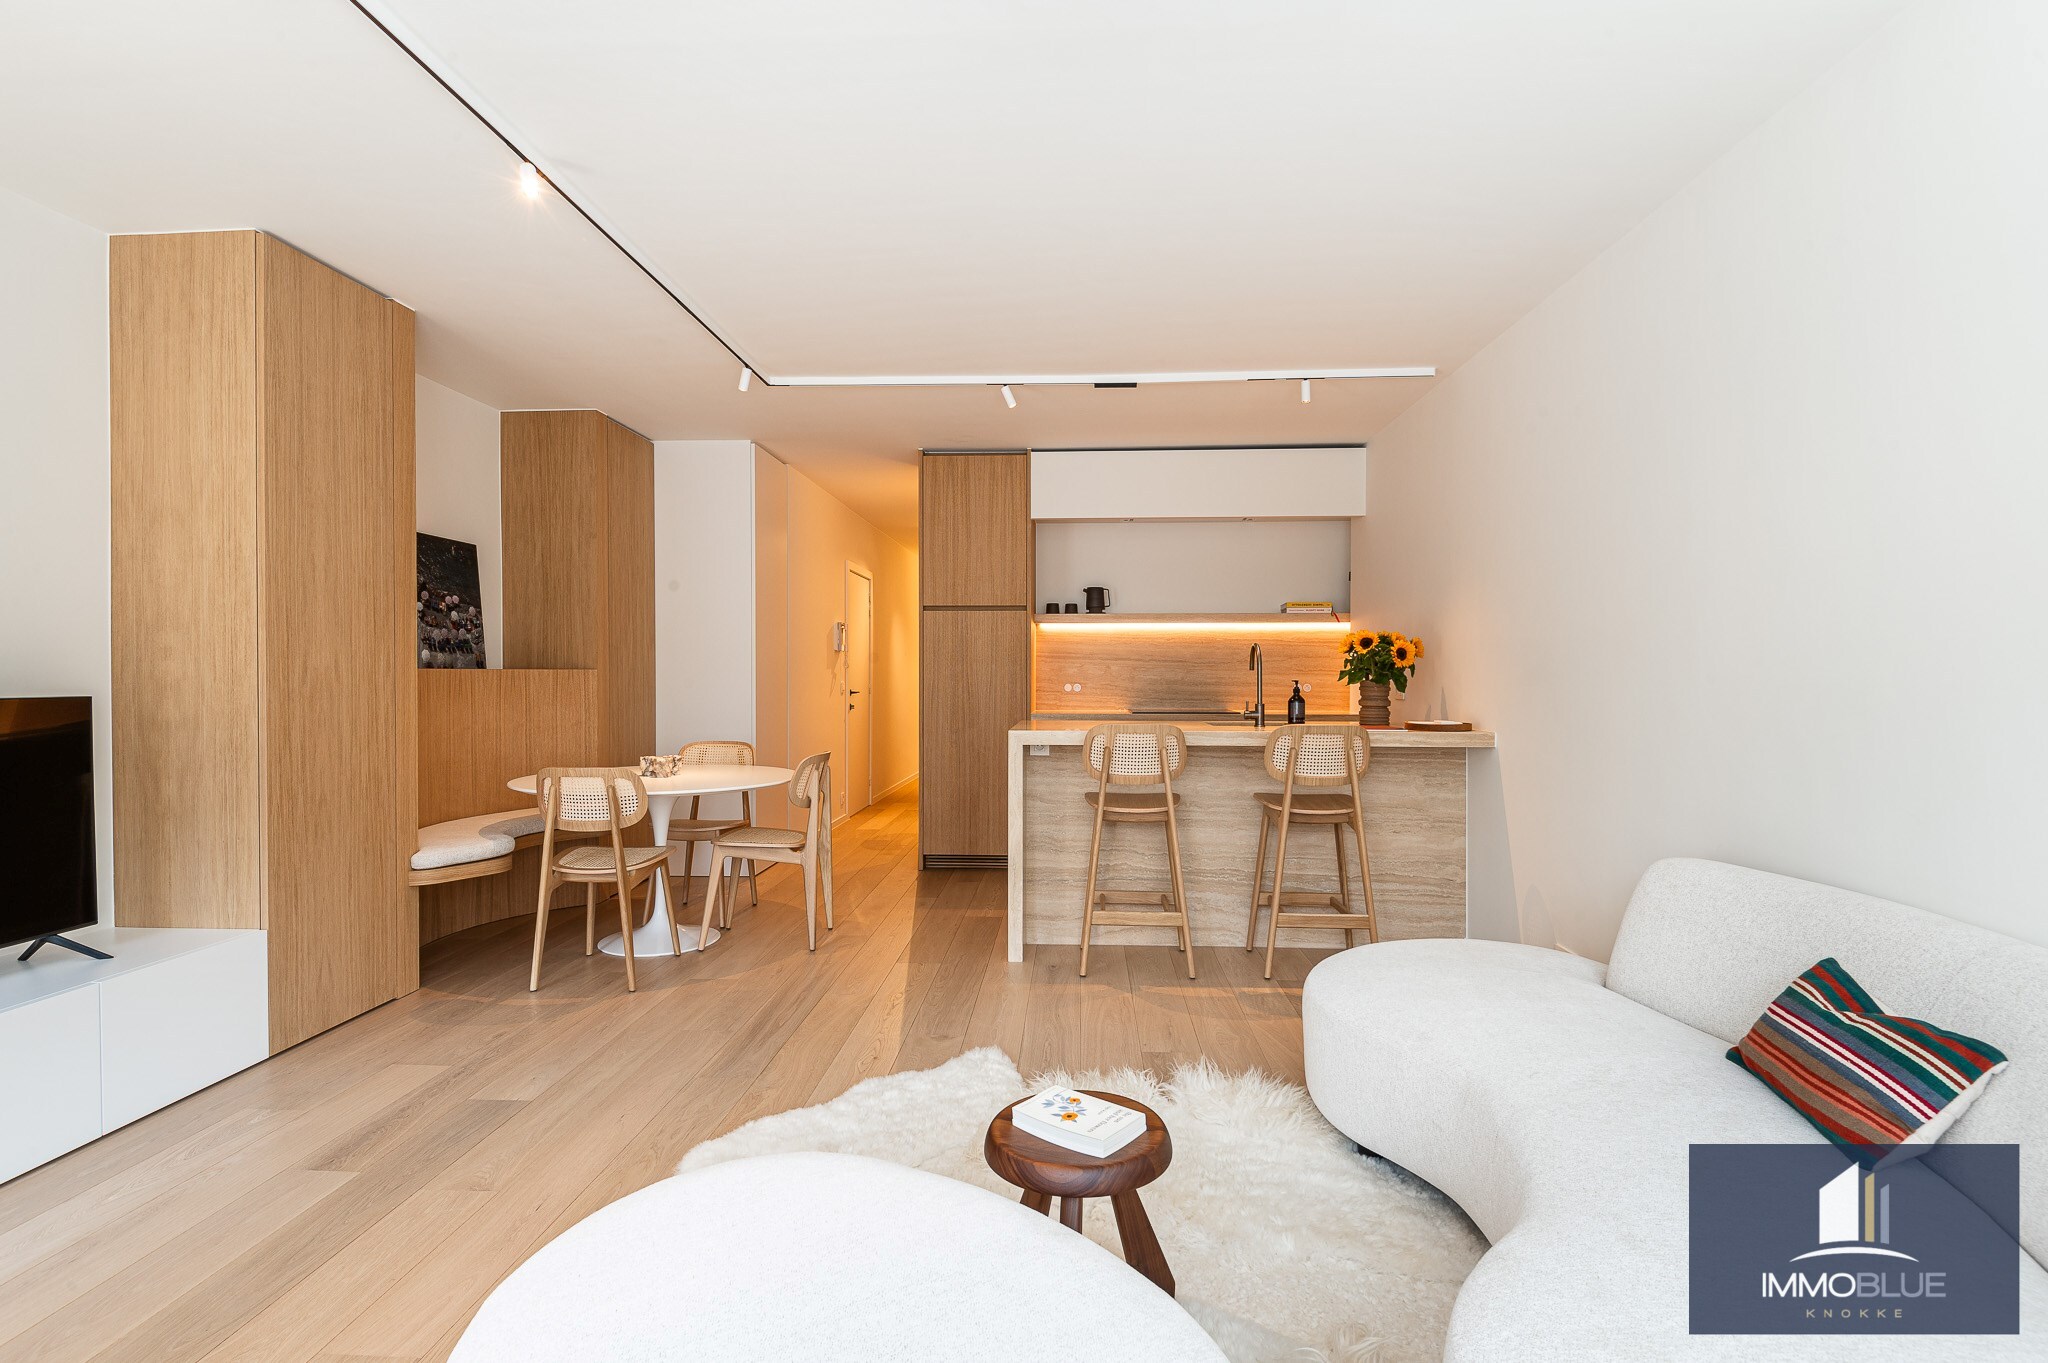 Volledig gerenoveerd appartement afgewerkt met kwalitatieve materialen en met zijdelings zeezicht. 